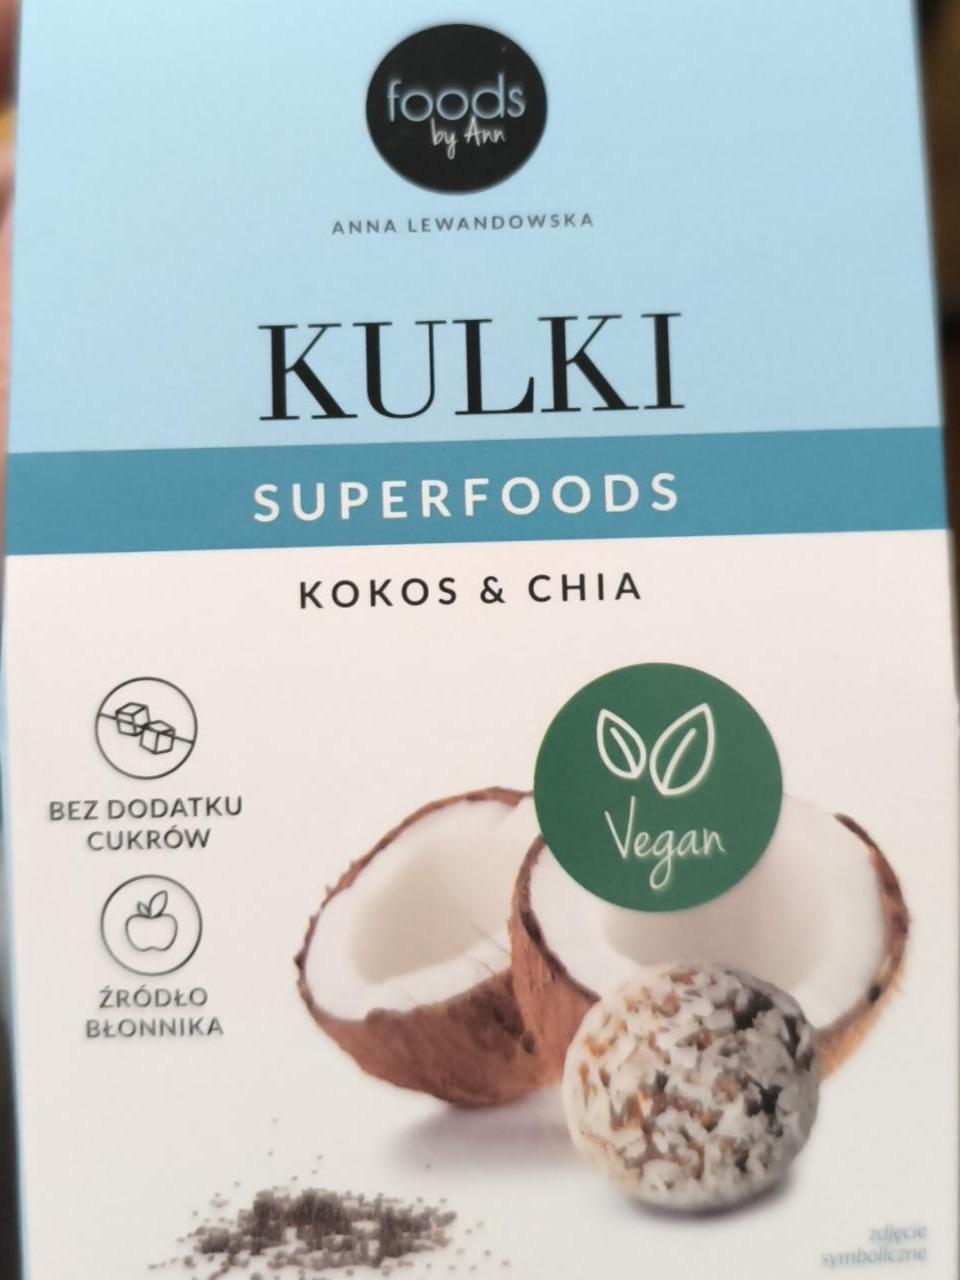 Фото - Kulki Superfoods Kokos & Chia Foods by Ann